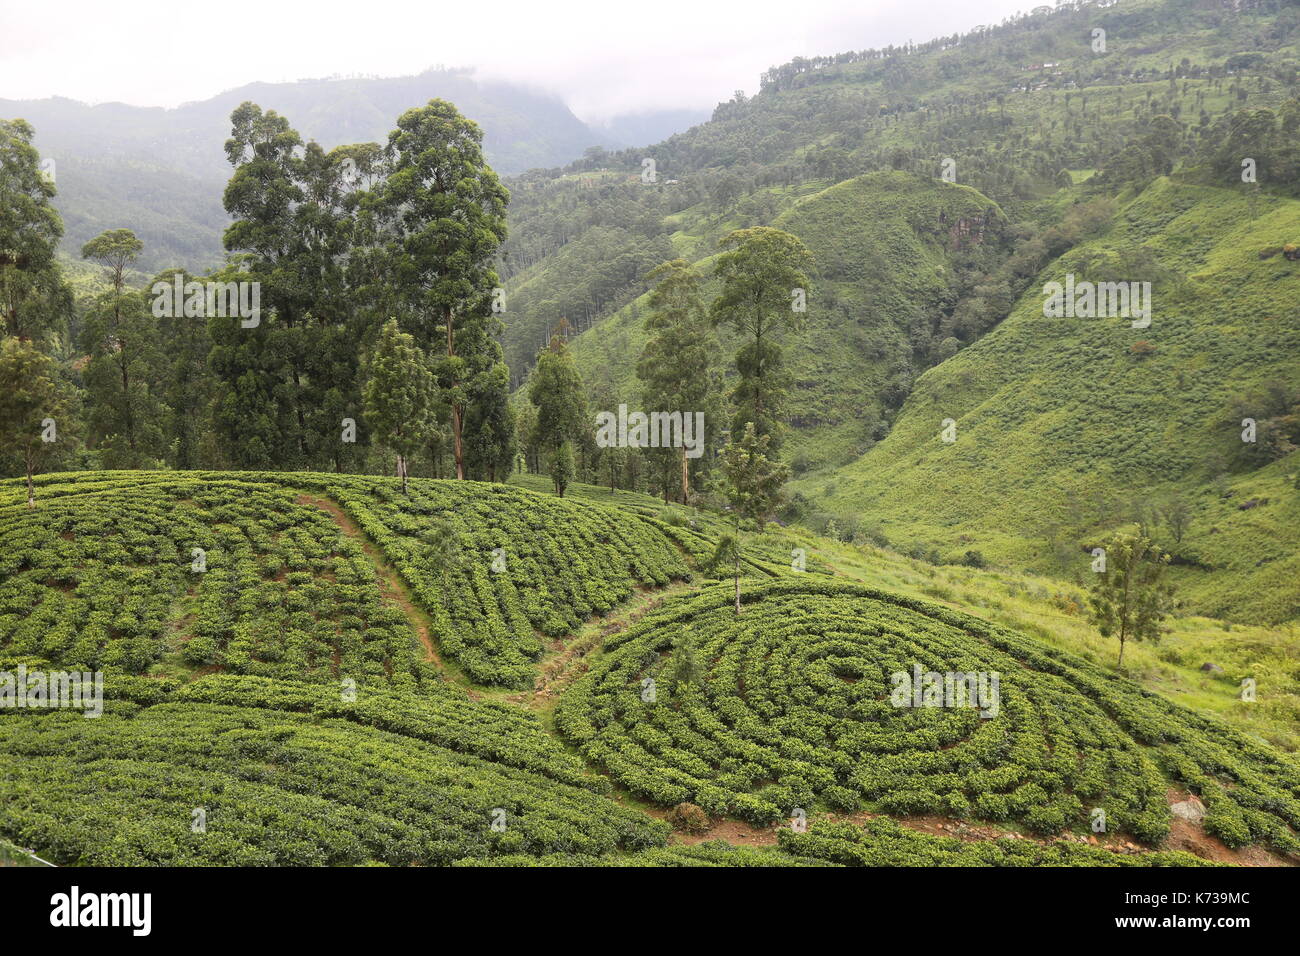 Sri lanka la piantagione di tè, il sud est asiatico, Hill Country, raccoglitori di tè, piantagione di tè, raccoglitrice di tè, tè raccolto, tè di Ceylon, english breakfast tea, agricoltura Foto Stock